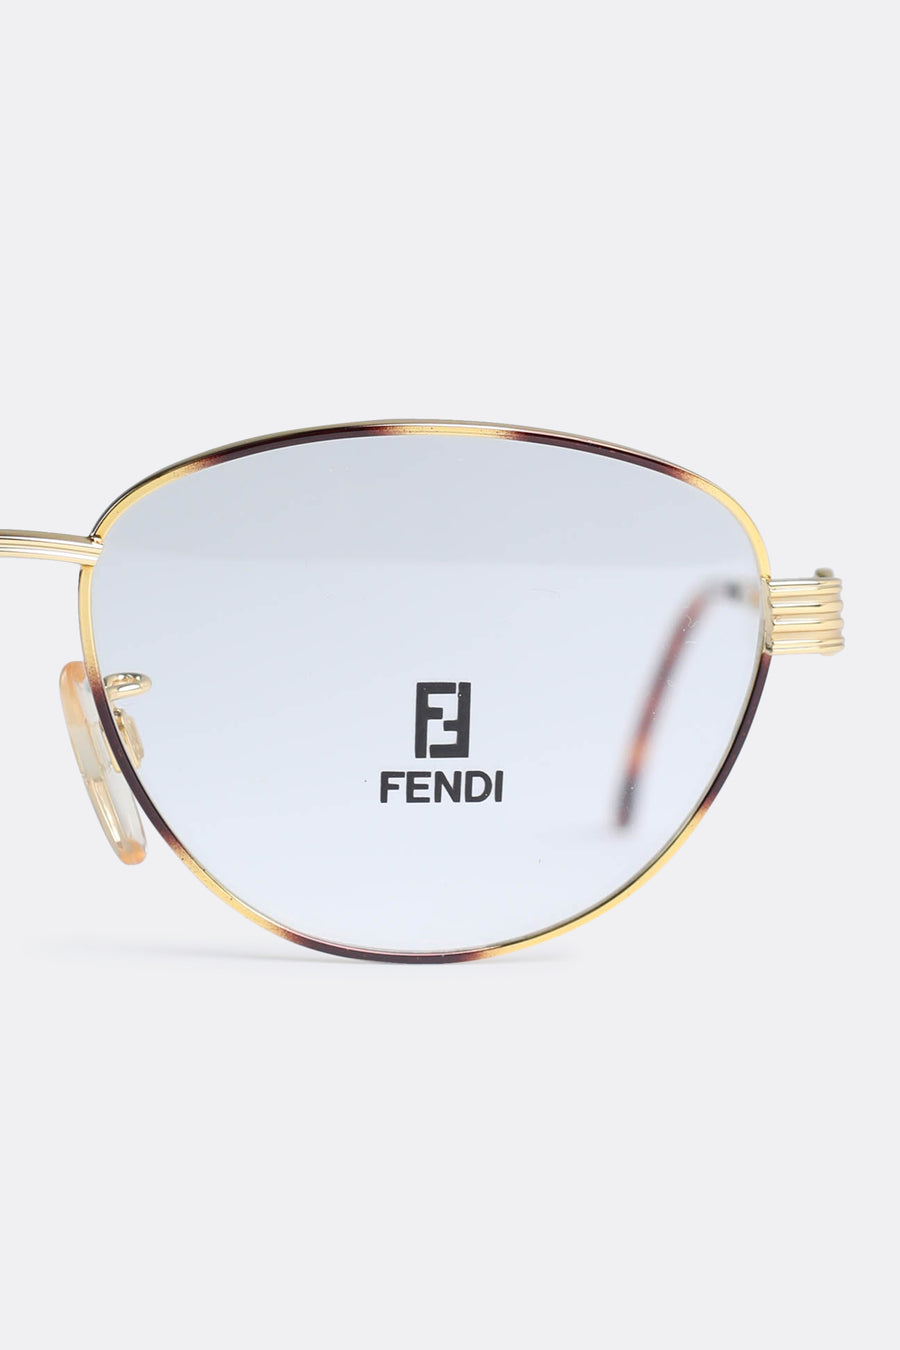 Vintage Fendi Frames